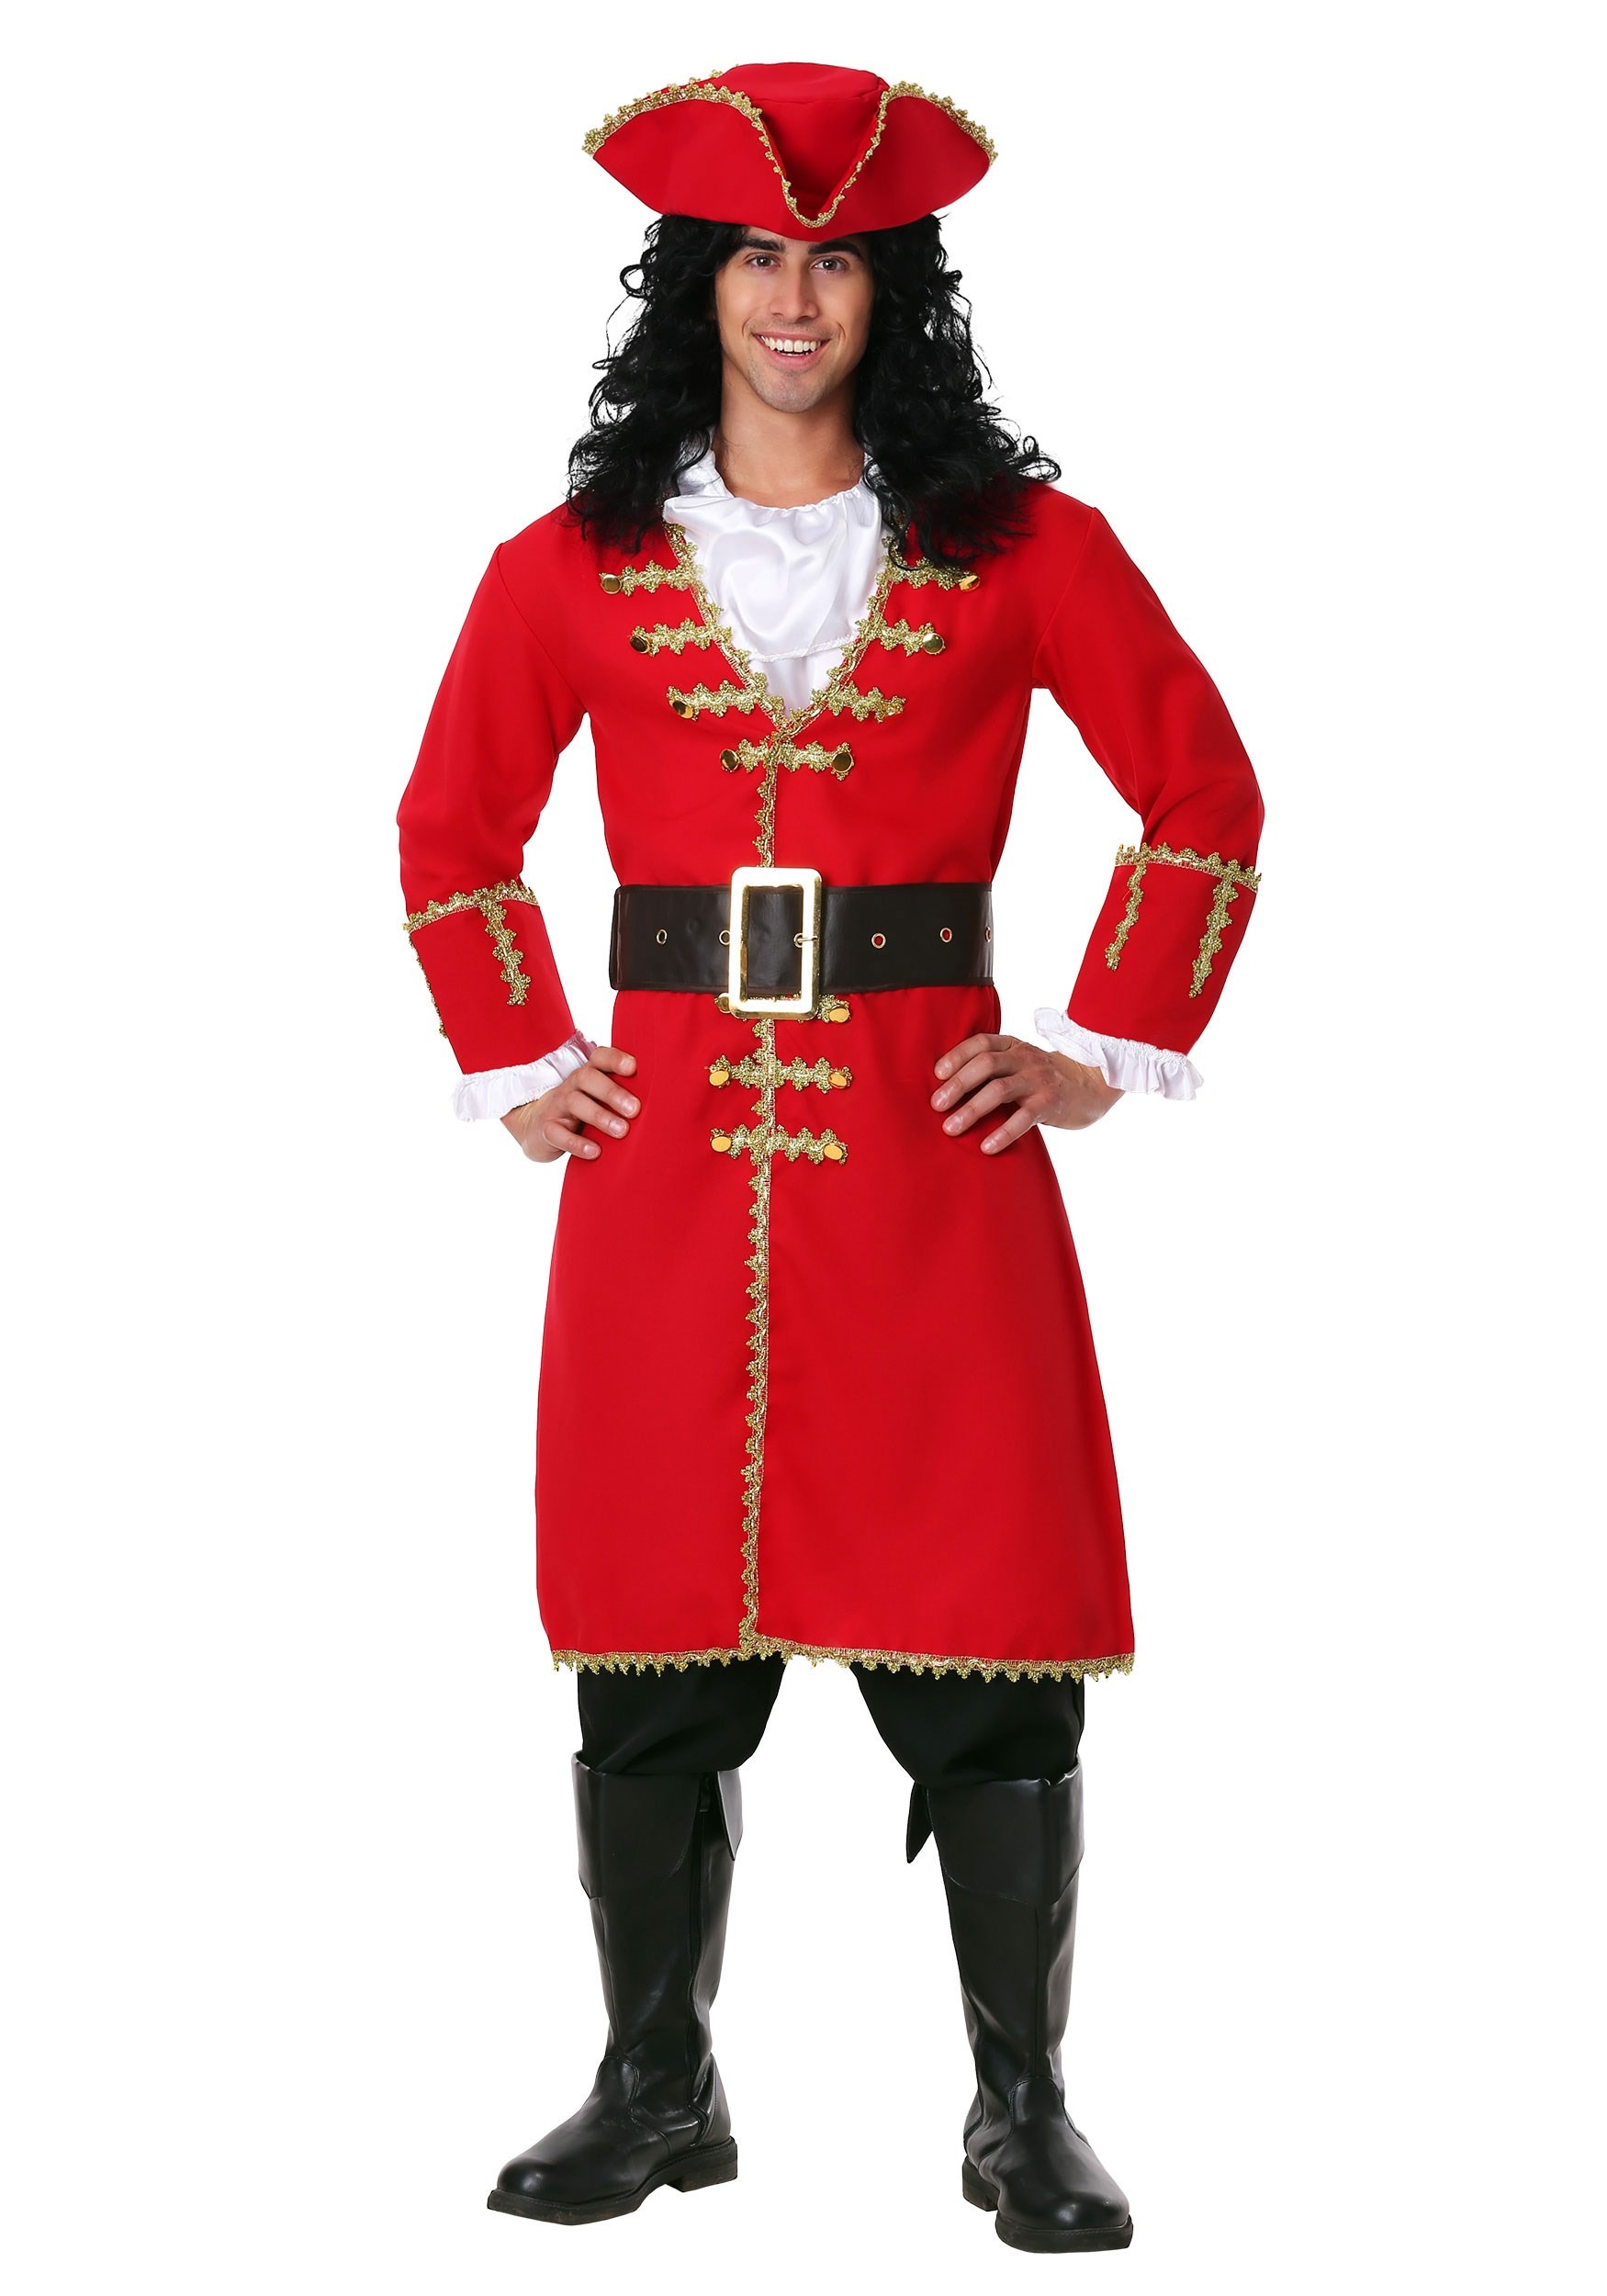 Photos - Fancy Dress FUN Costumes Captain Blackheart Plus Size Costume for Men Red FUN2015PL